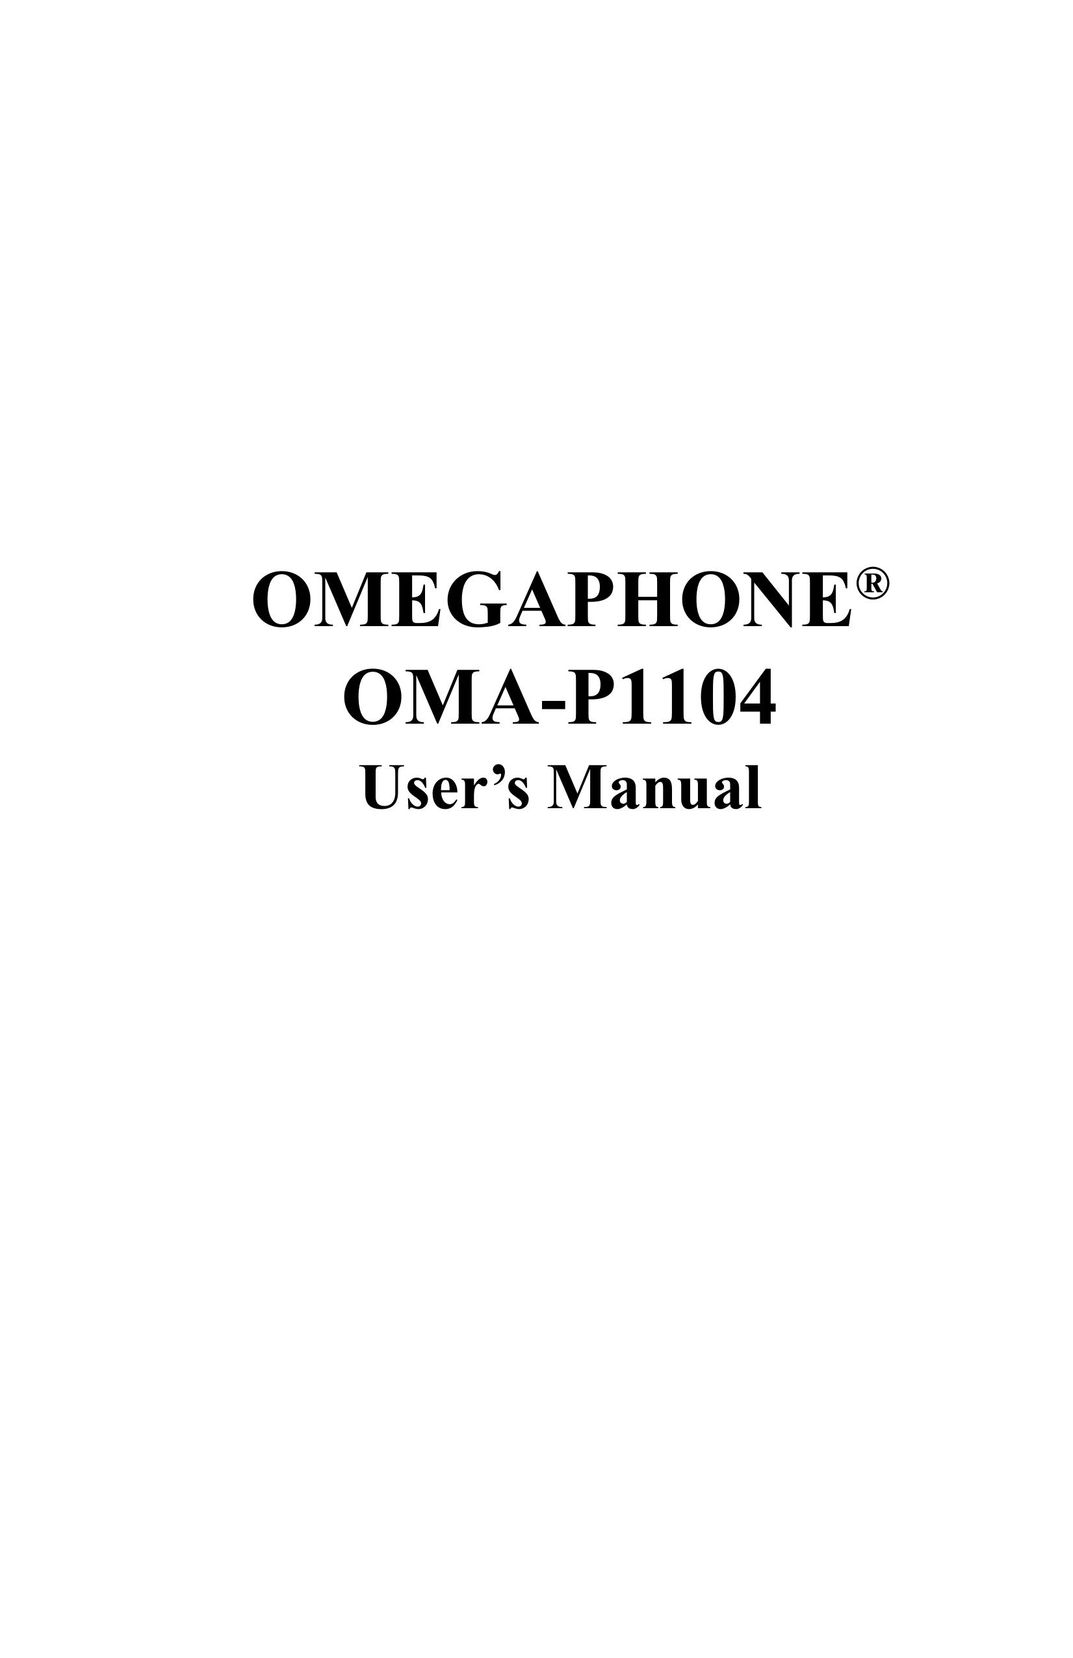 Omega OMA-P1104 Cordless Telephone User Manual